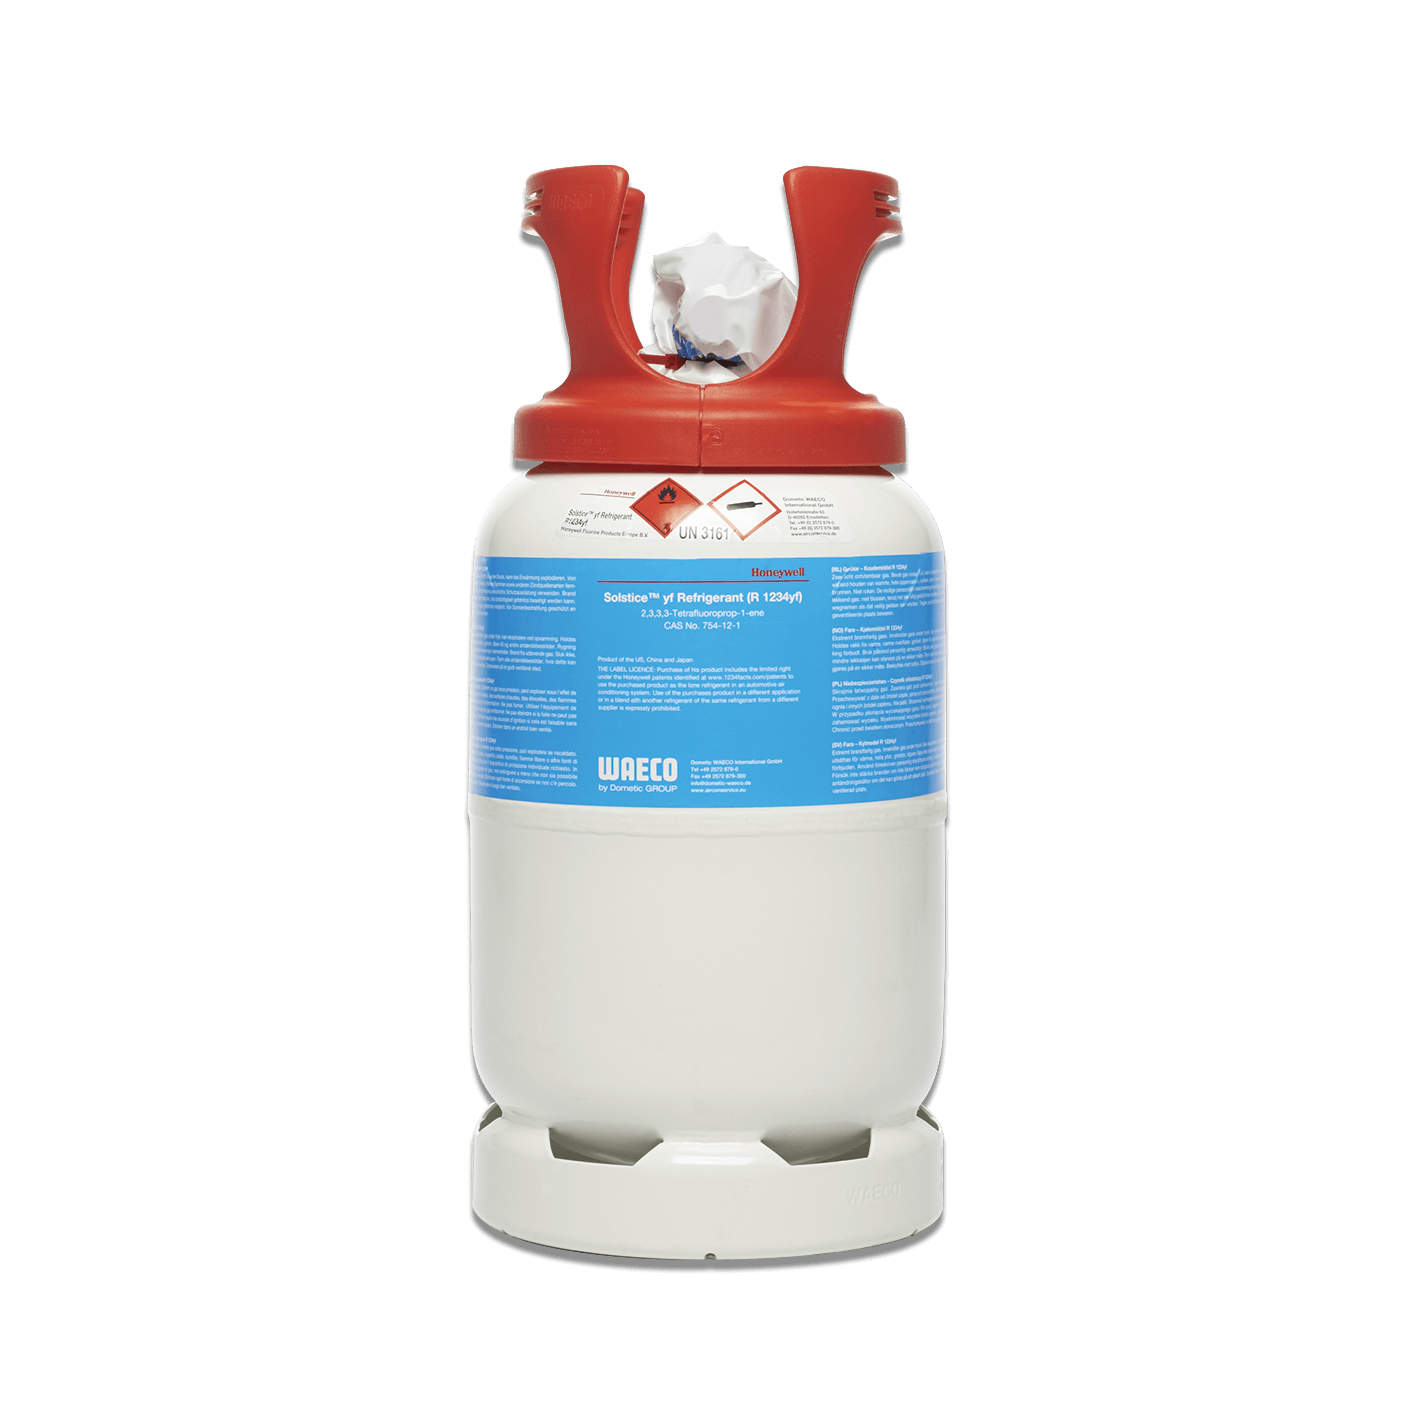 WAECO Stahlflasche für Kältemittel R 1234yf, Pfand für Leihflasche